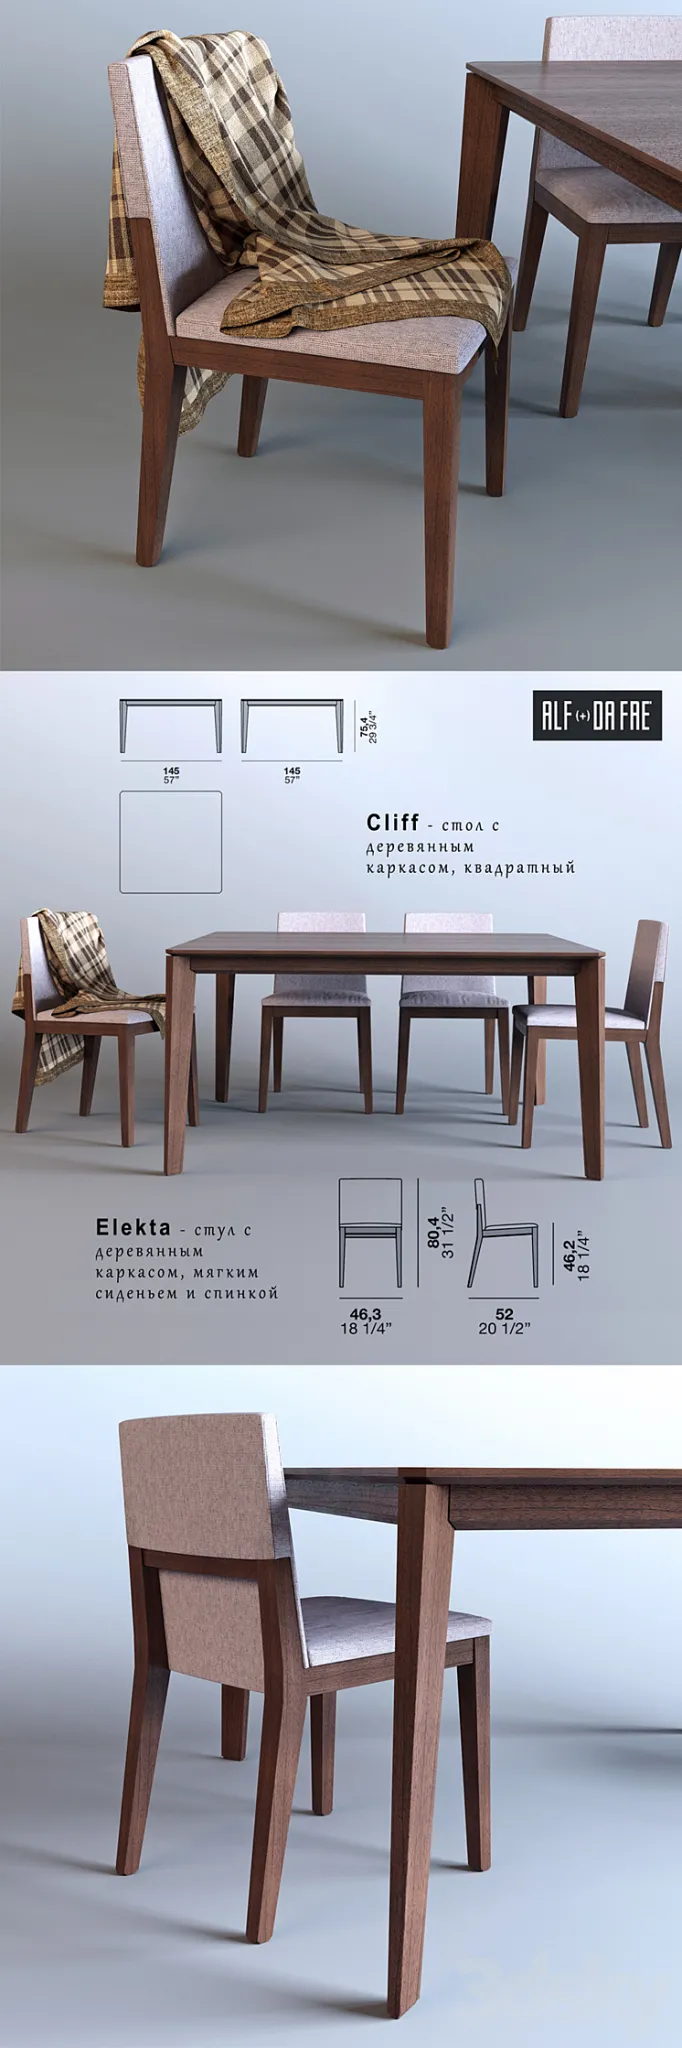 Cliff table and chair Elekta (Alf + Dafrè) 3DS Max